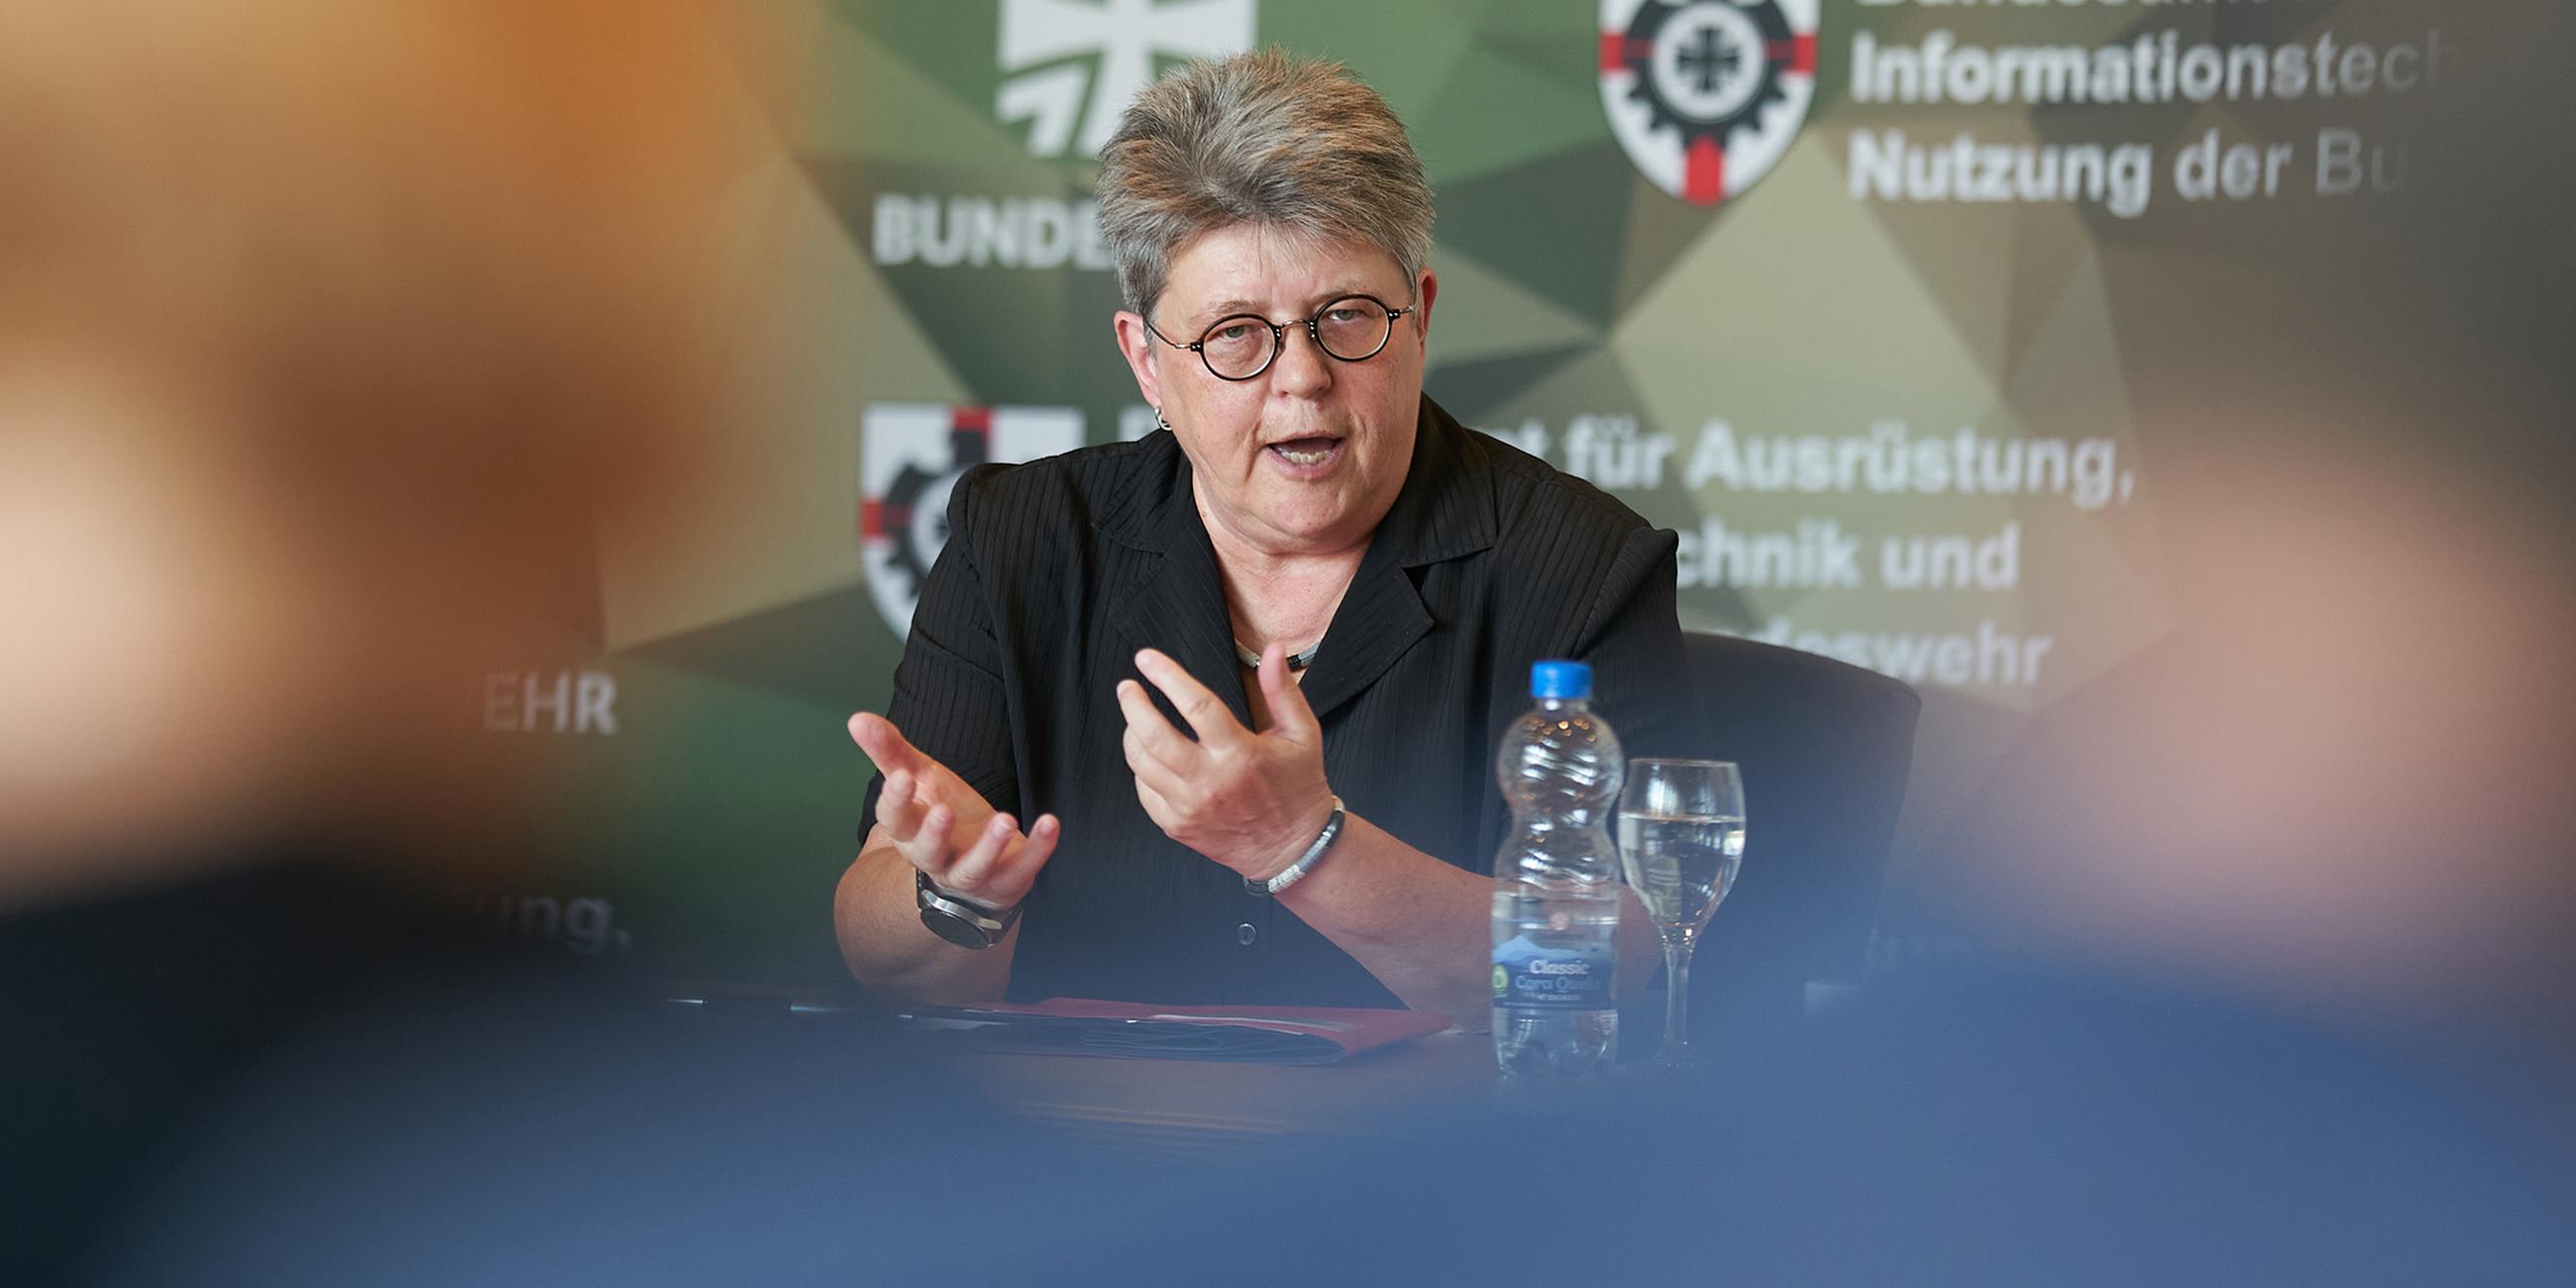 Annette Lehnigk-Emden, Präsidentin des Bundesamtes für Ausrüstung, Informationstechnik und Nutzung der Bundeswehr, am 16.08.2023 in Koblenz.